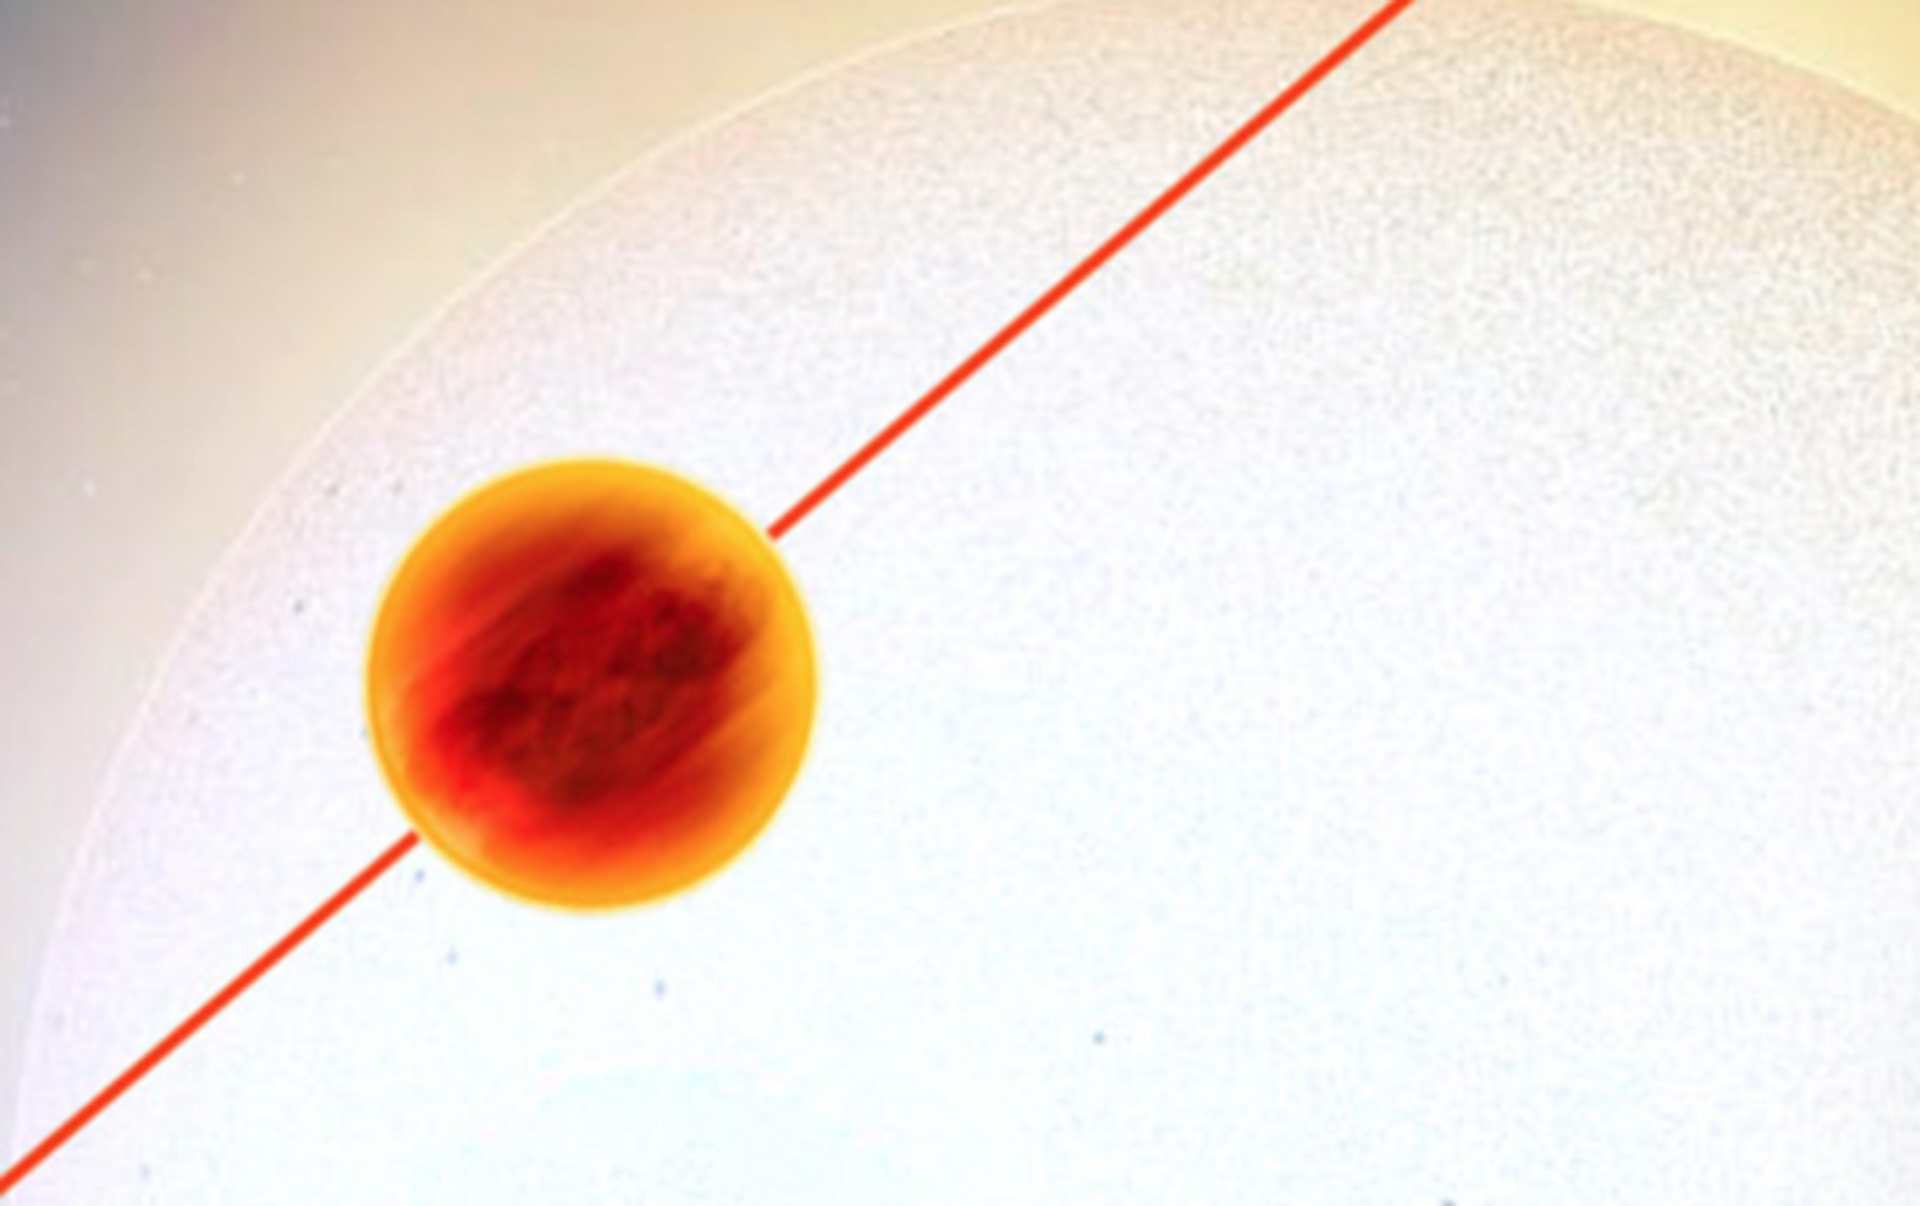 Descoberto novo planeta 'infernal' muito quente com características únicas (FOTO) - Sputnik Brasil, 1920, 30.04.2021